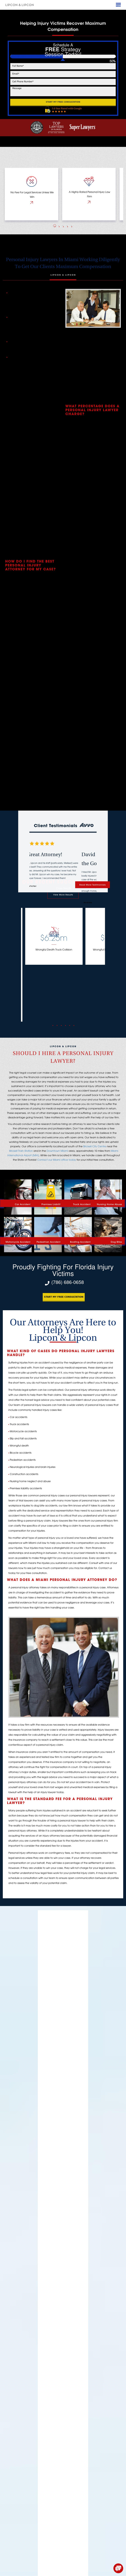 Lipcon & Lipcon, P.A. - Miami FL Lawyers